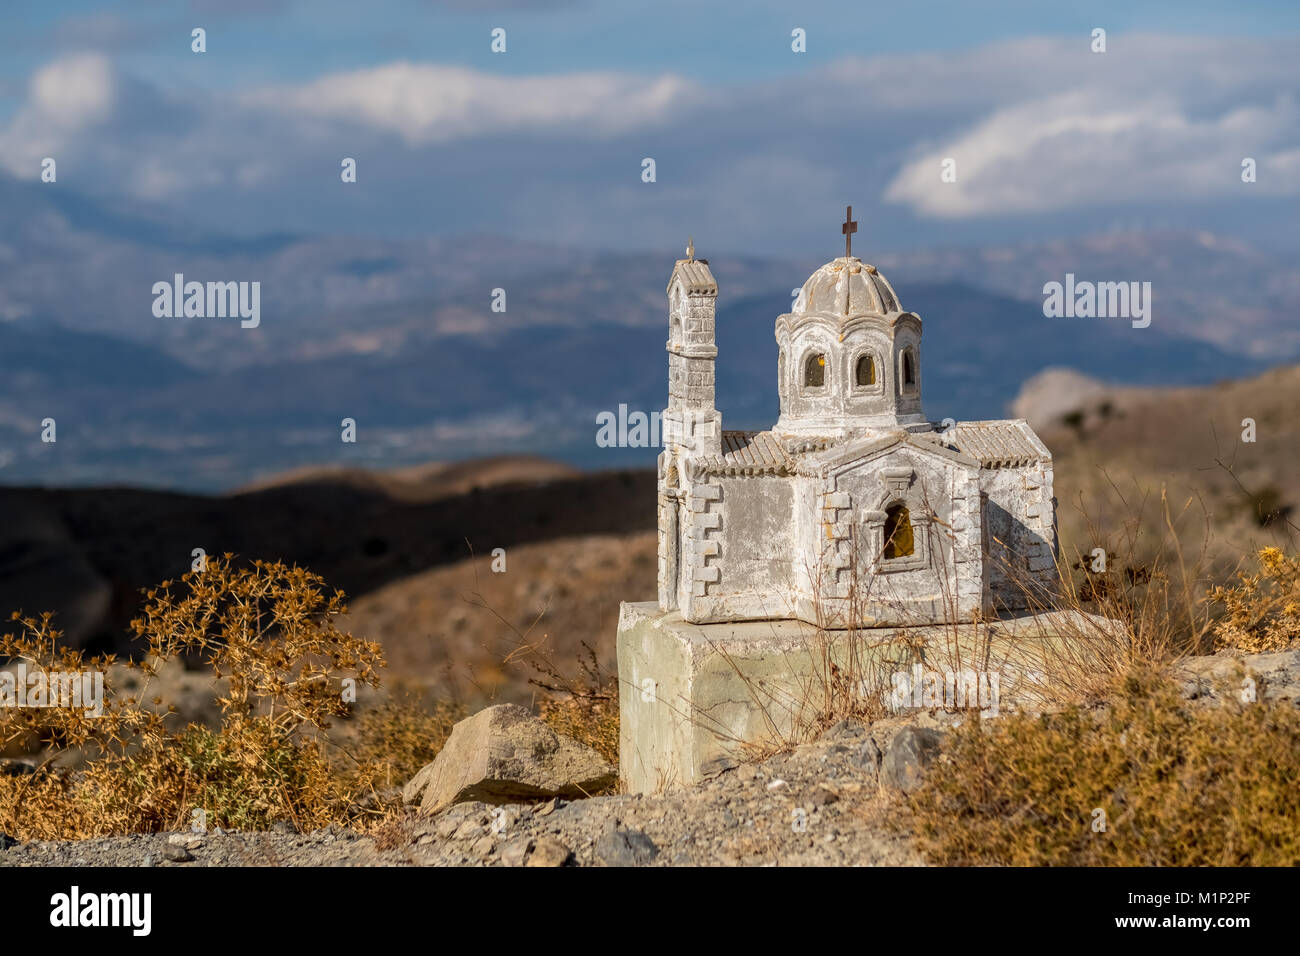 Ikonostassia,cappella presso la banchina,cappella in miniatura,highlands all'interno di Creta,ampia valle vicino a Agia Galini,Creta Foto Stock